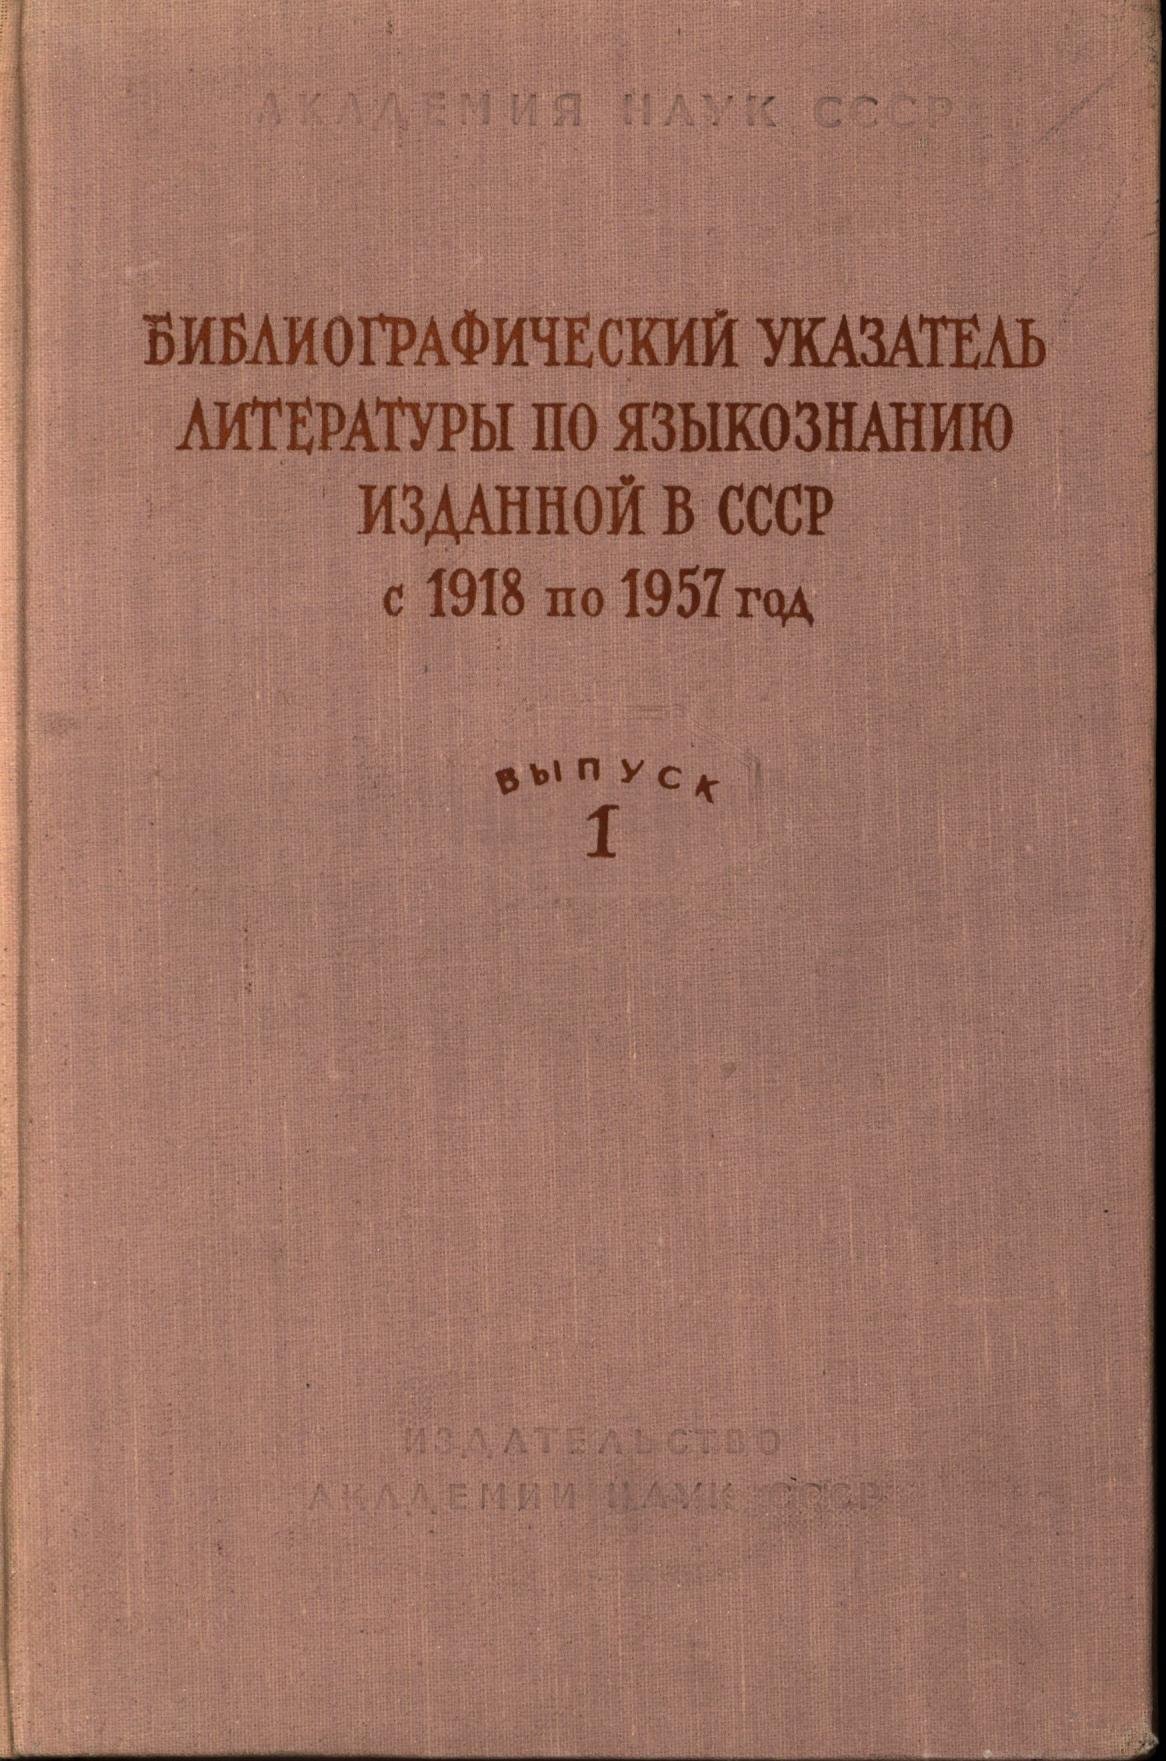 Библиографический указатель литературы по языкознанию, изданной в СССР